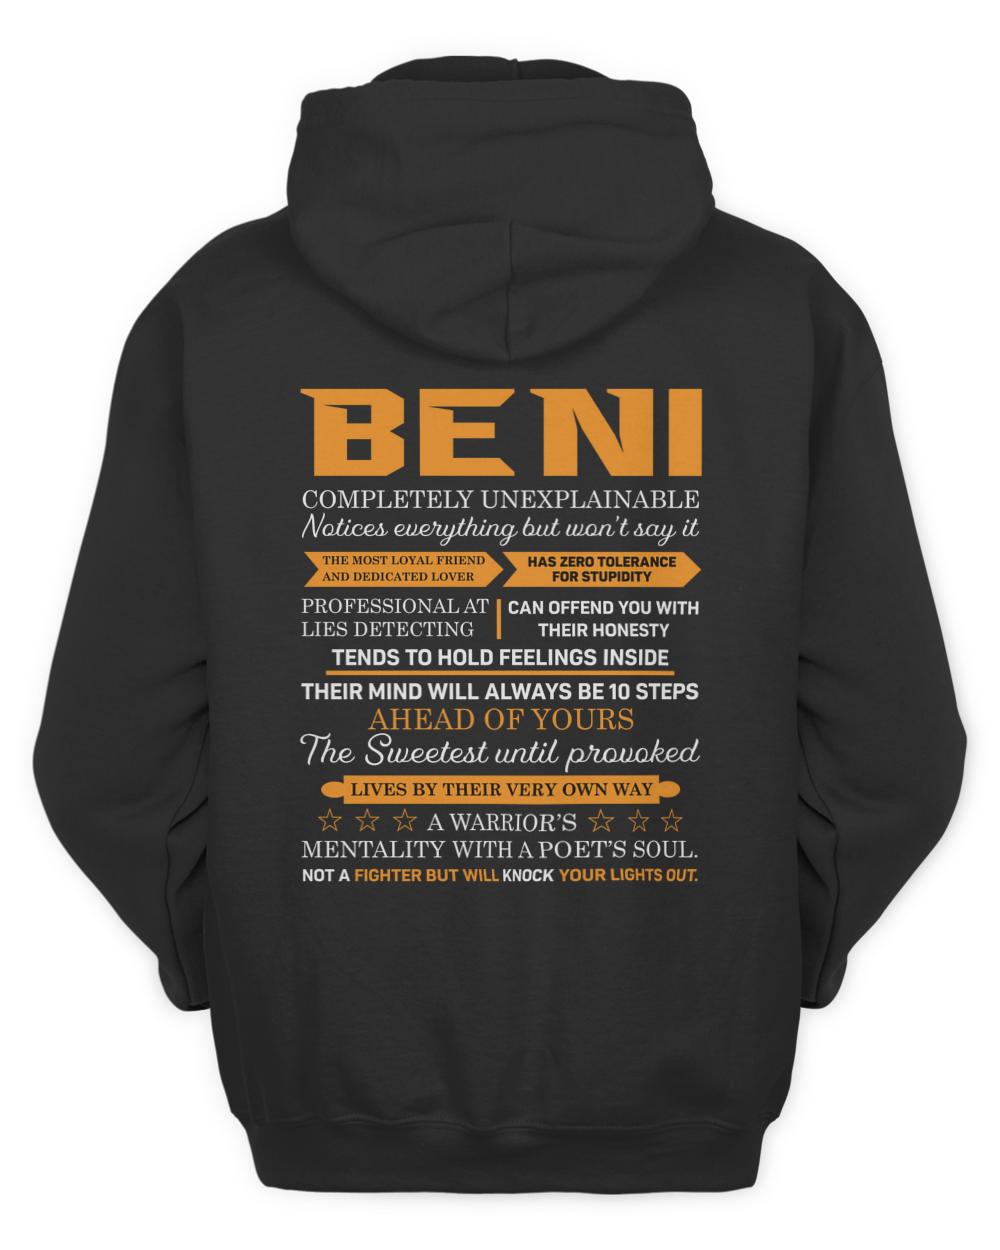 BENI-13K-N1-01